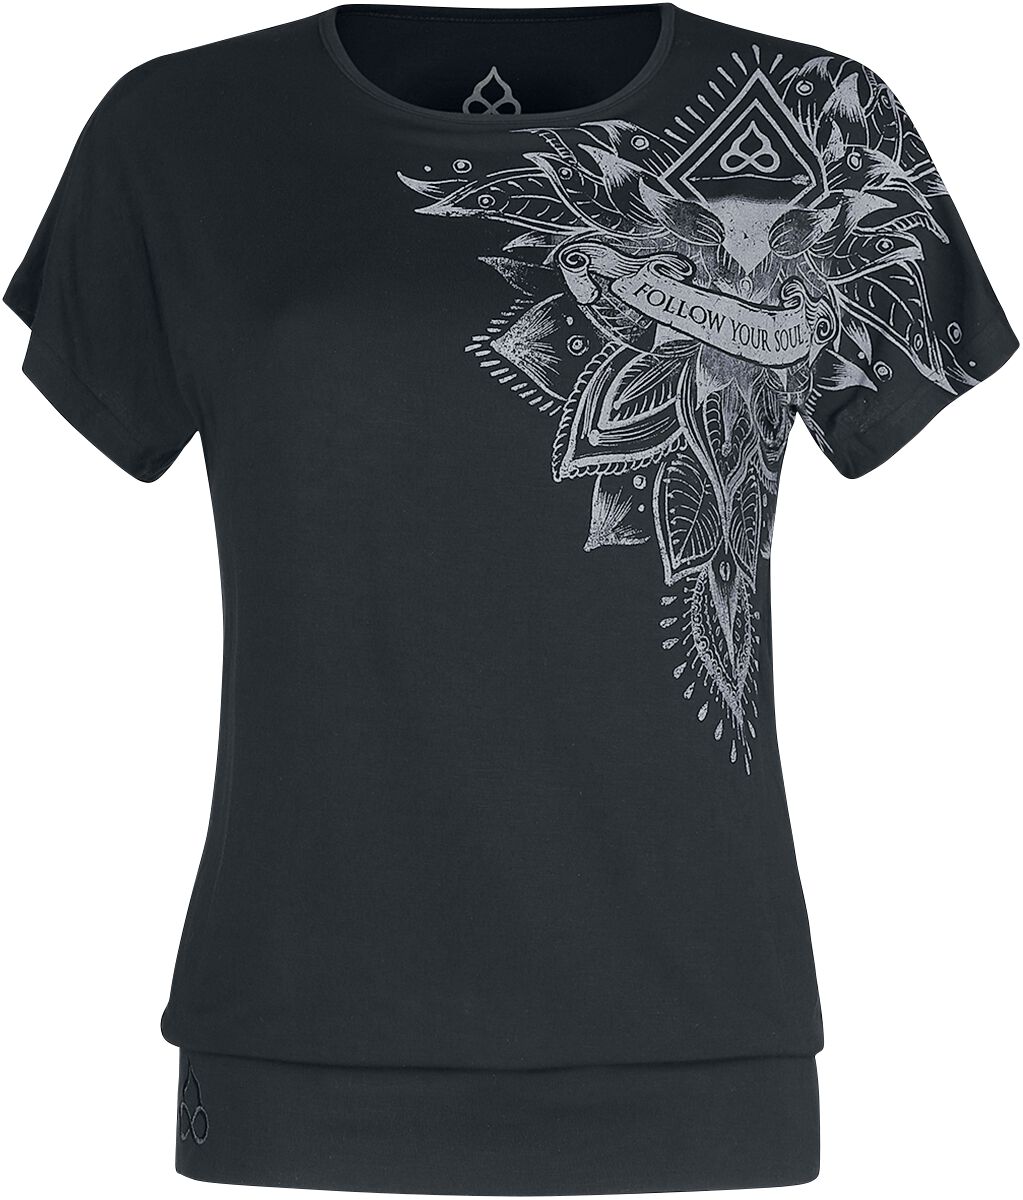 EMP Special Collection T-Shirt - Sport und Yoga - Schwarzes lockeres T-Shirt mit detailreichem Print - M bis 4XL - für Damen - Größe 4XL - schwarz